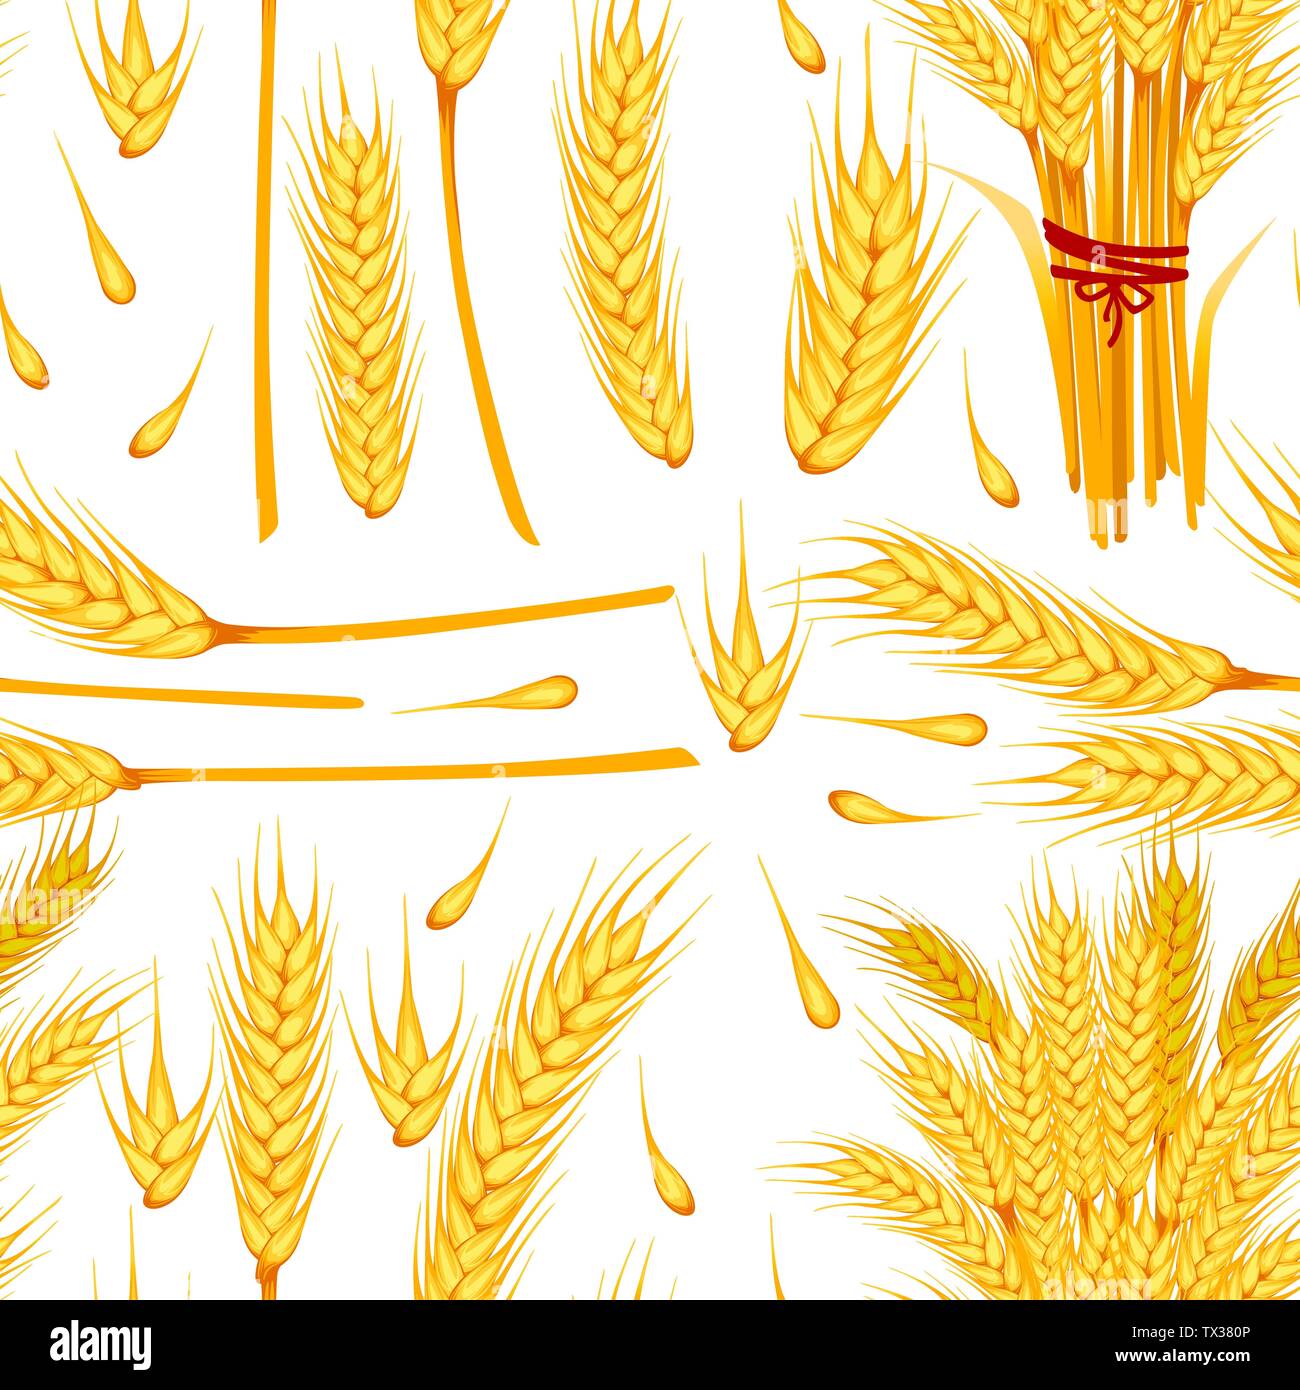 Nahtlose Muster von Weizen gelb reif Ährchen und Körner von Weizen flachbild Vector Illustration auf weißem Hintergrund Stock Vektor